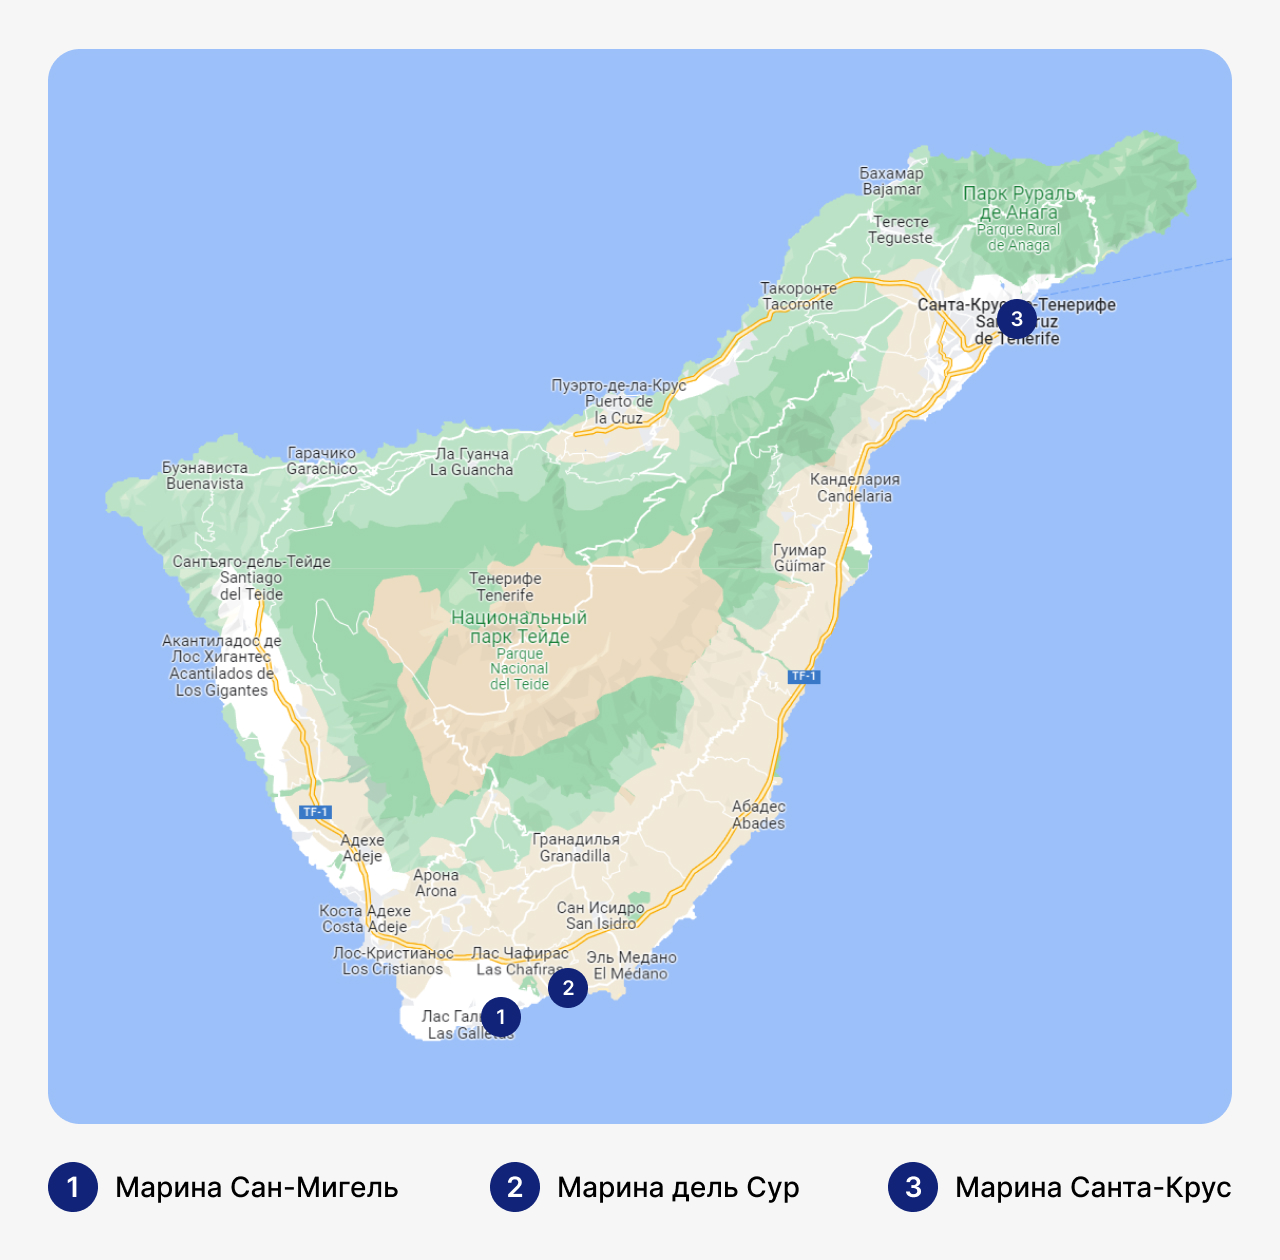 Лучшие марины на Тенерифе, карта Тенерифе с маринами, стоянка для яхт на Тенерифе, где хранить яхты на Тенерифе